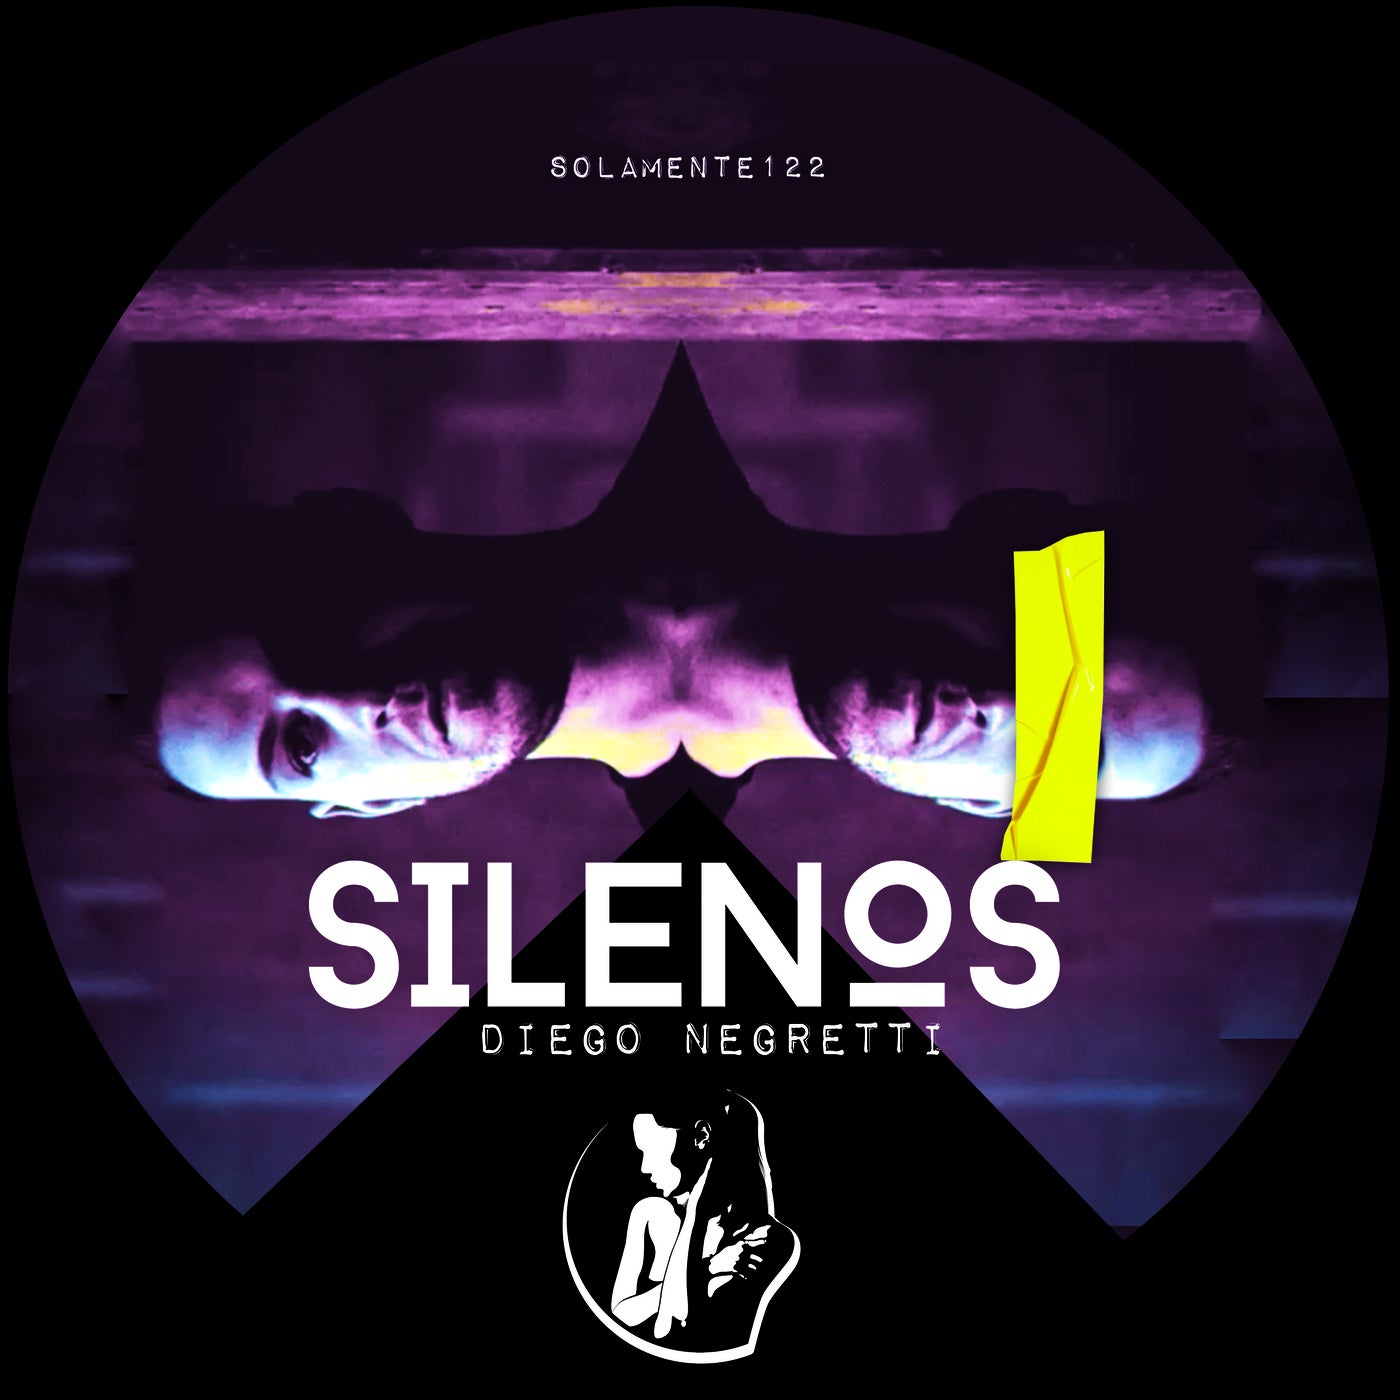 Diego Negretti - Silenos SOLAMENTE122]